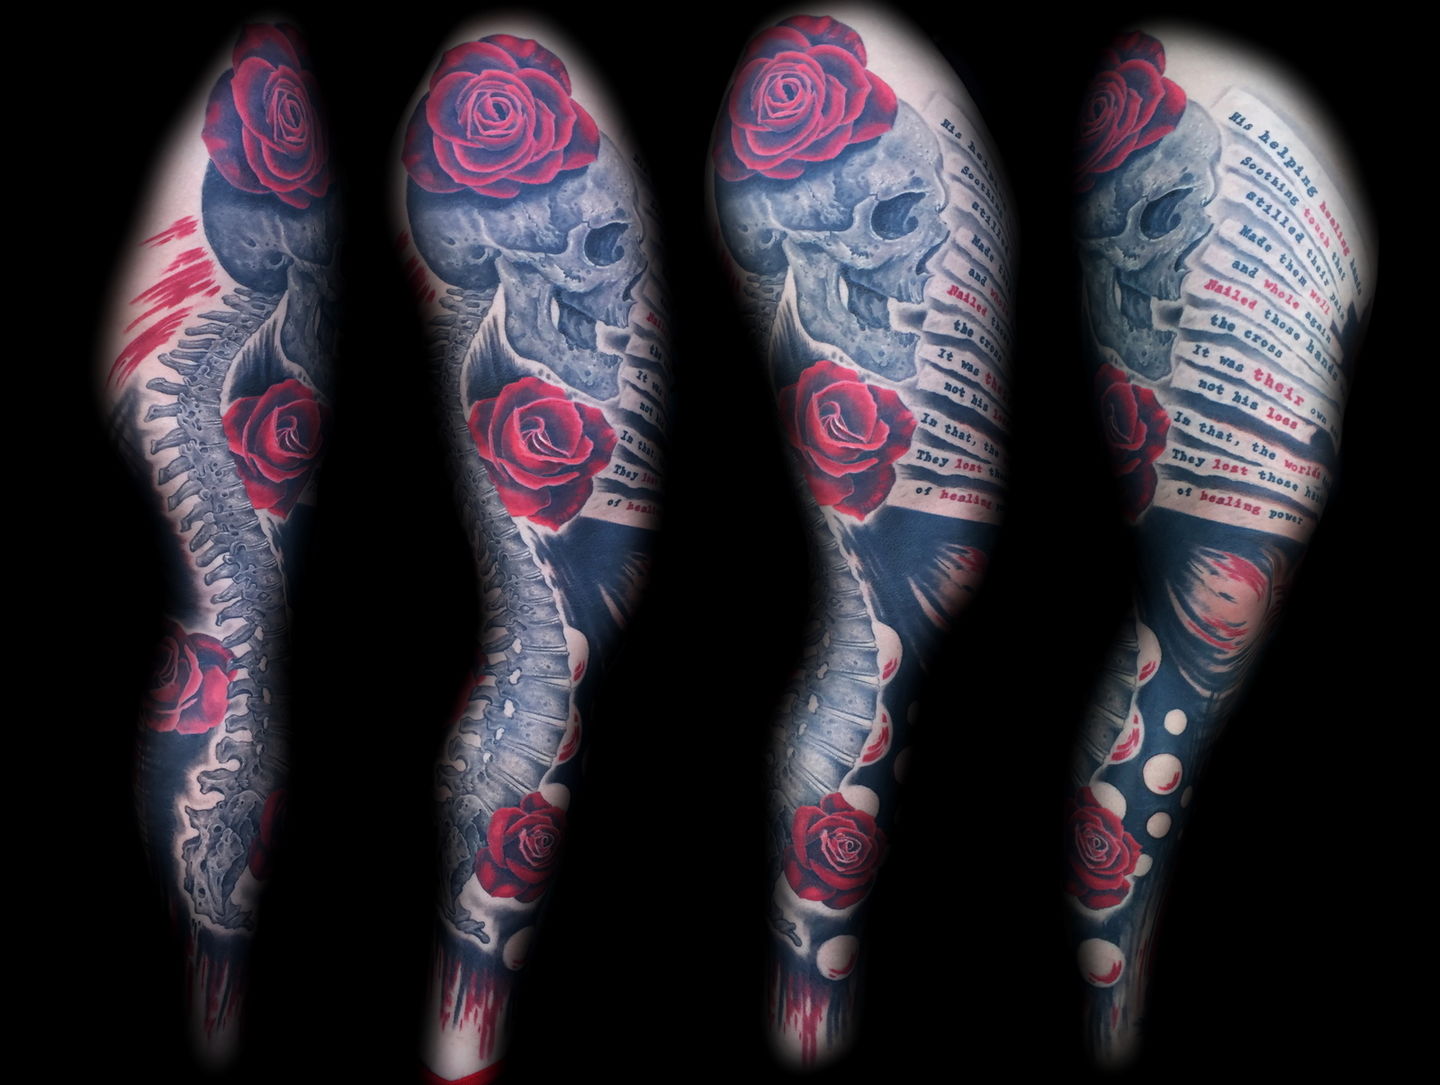 Las-vegas-tattoo-artist_joe-riley_skull_leg_sleeve_with_roses_tattoo